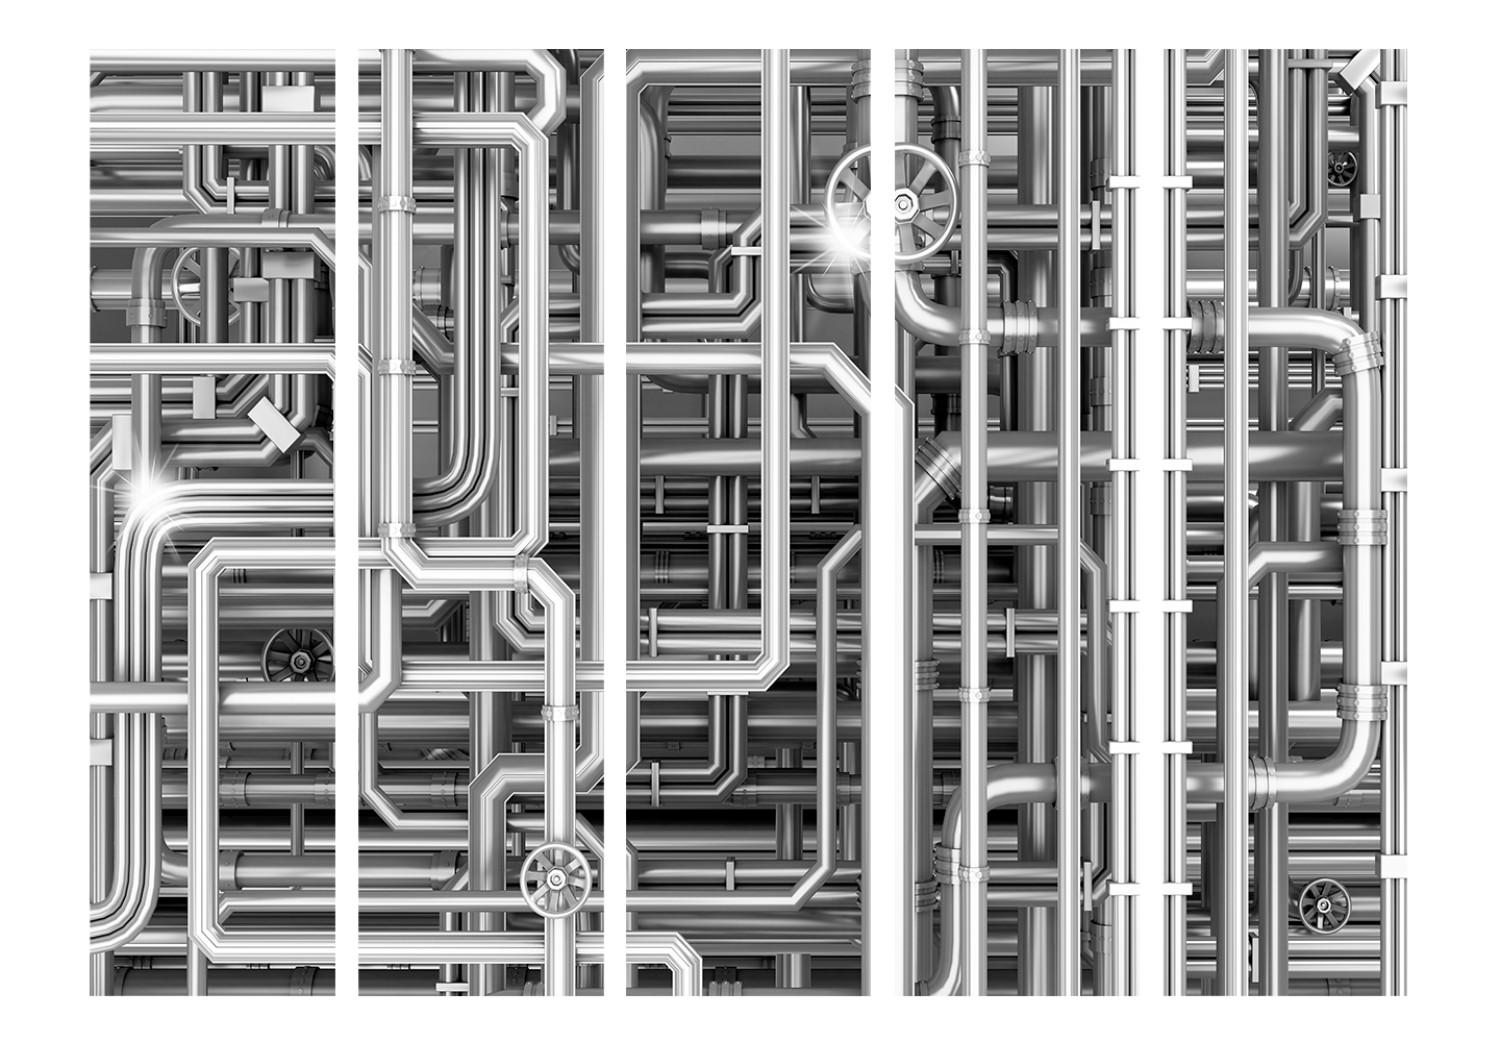 Biombo Urban Labyrinth II - composición abstracta de tubos de metal gris